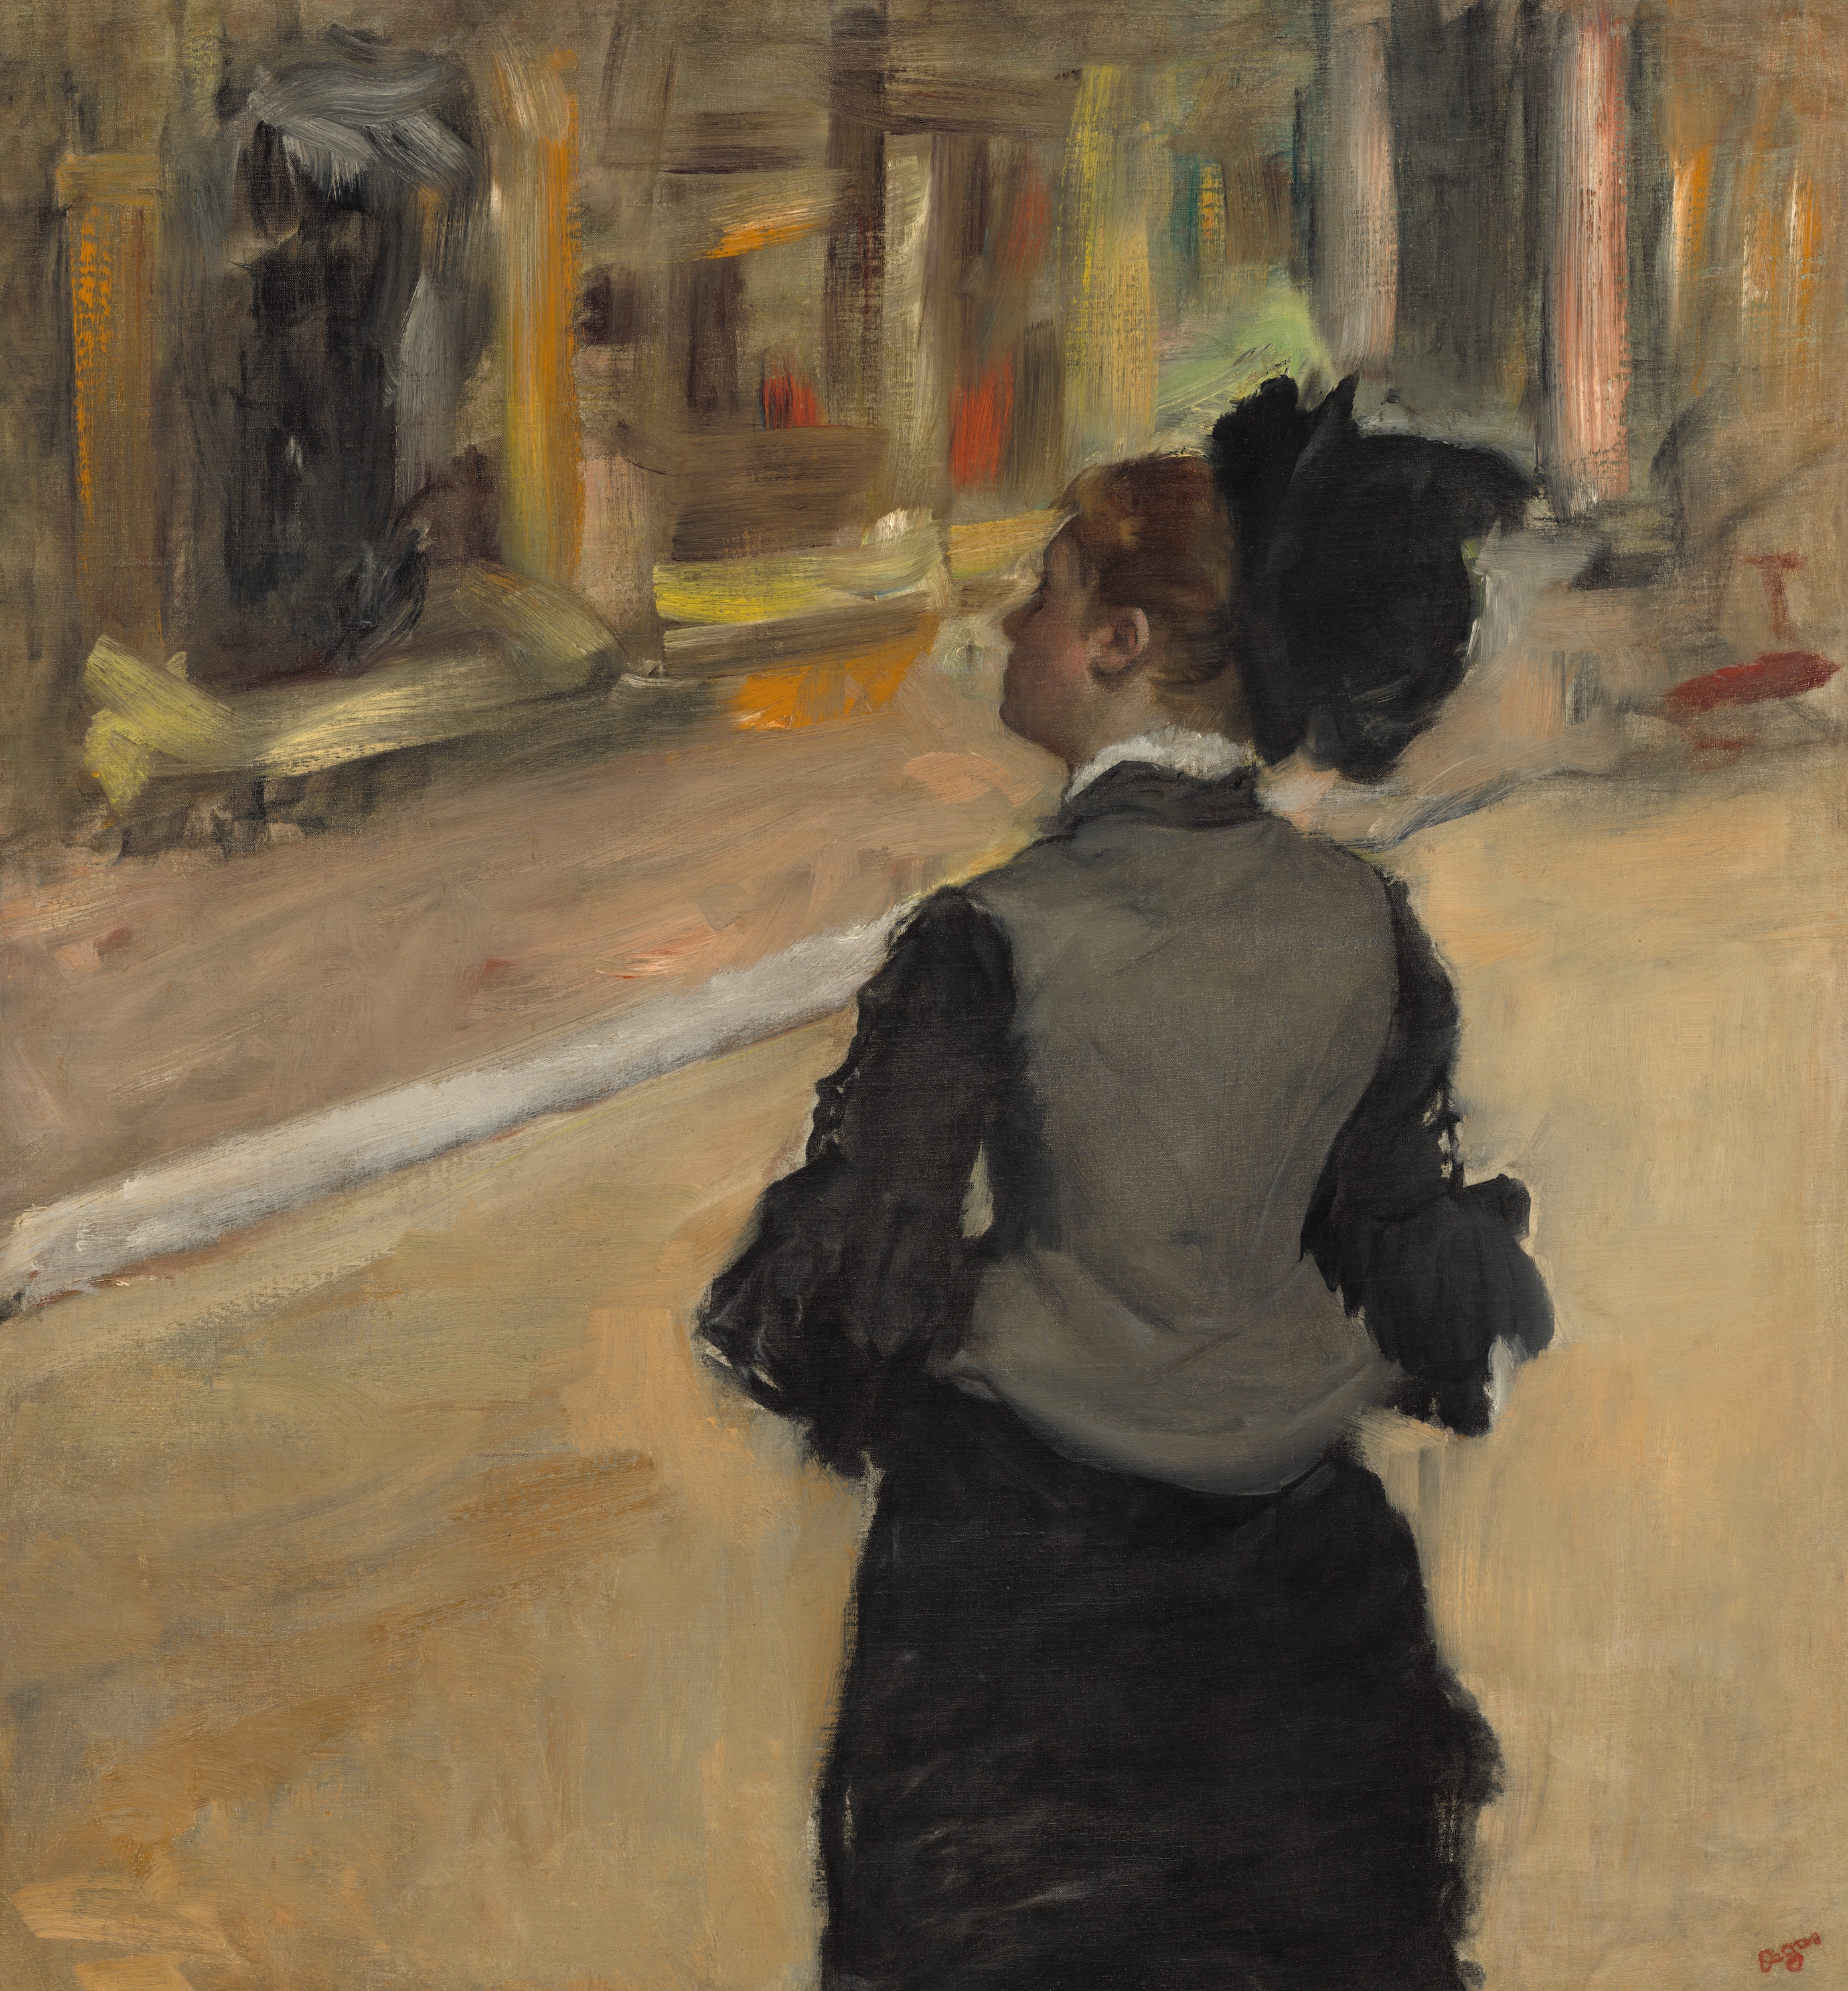 امرأة من منظور خلفي (زيارة إلى متحف) by Edgar Degas - بين حوالي 1879 وحوالي 1885 م - 81.3 في 75.6 سم 